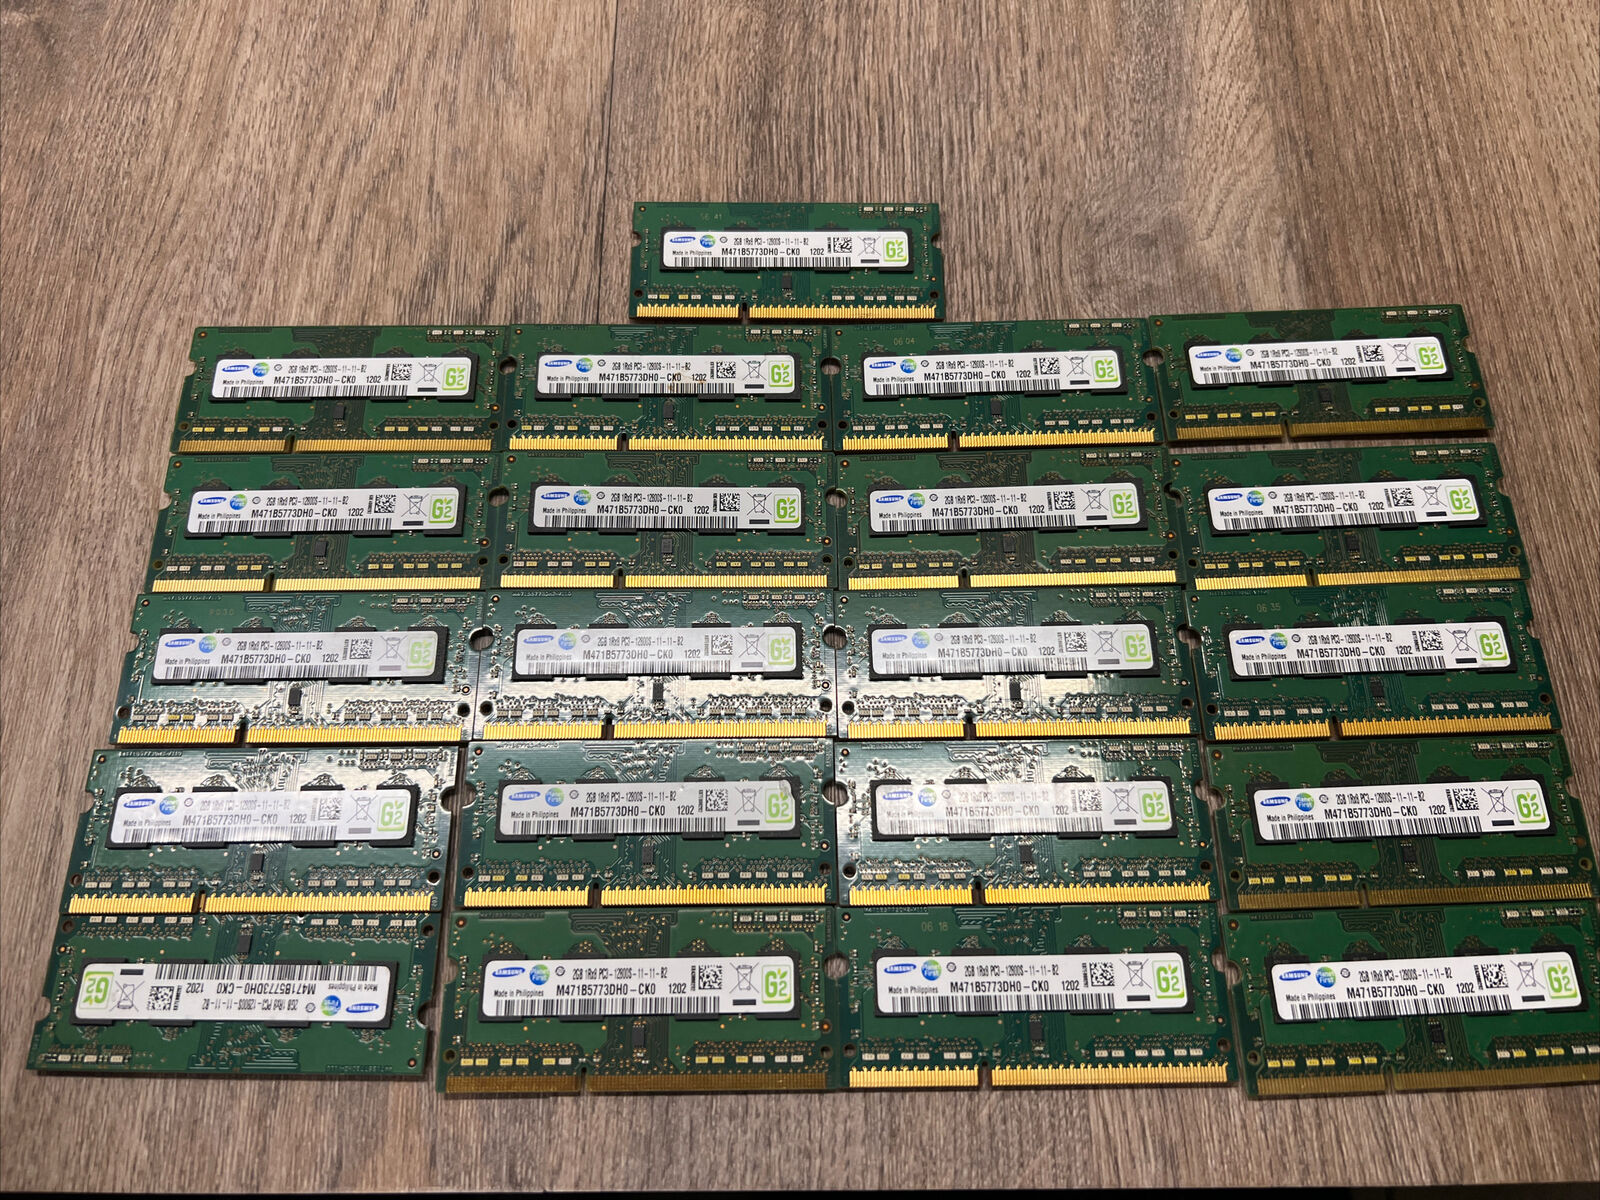 Lot of 21 Samsung M471B5773DH0-CK0 2GB (42GB Total) PC3-10600S DDR3 SODIMM